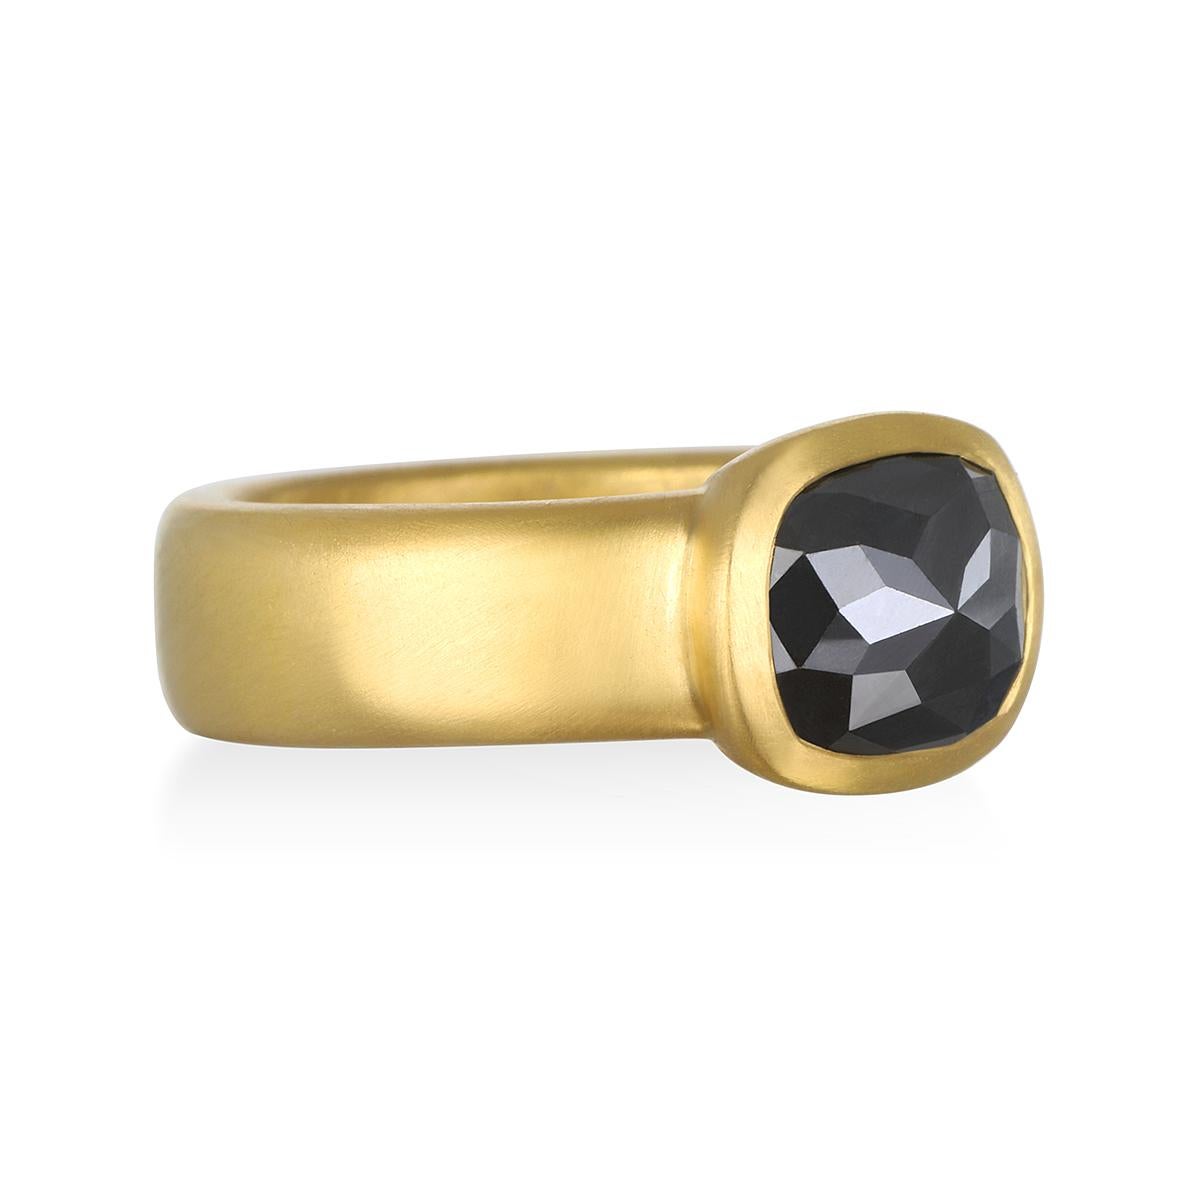 Bague à chaton en or 22 carats et diamants noirs de Faye Kim

Black Diamond 2.16 cts

Tige carrée 5 x 2,4 mm

Taille 7.25 - peut être redimensionnée

Fabriqué aux États-Unis